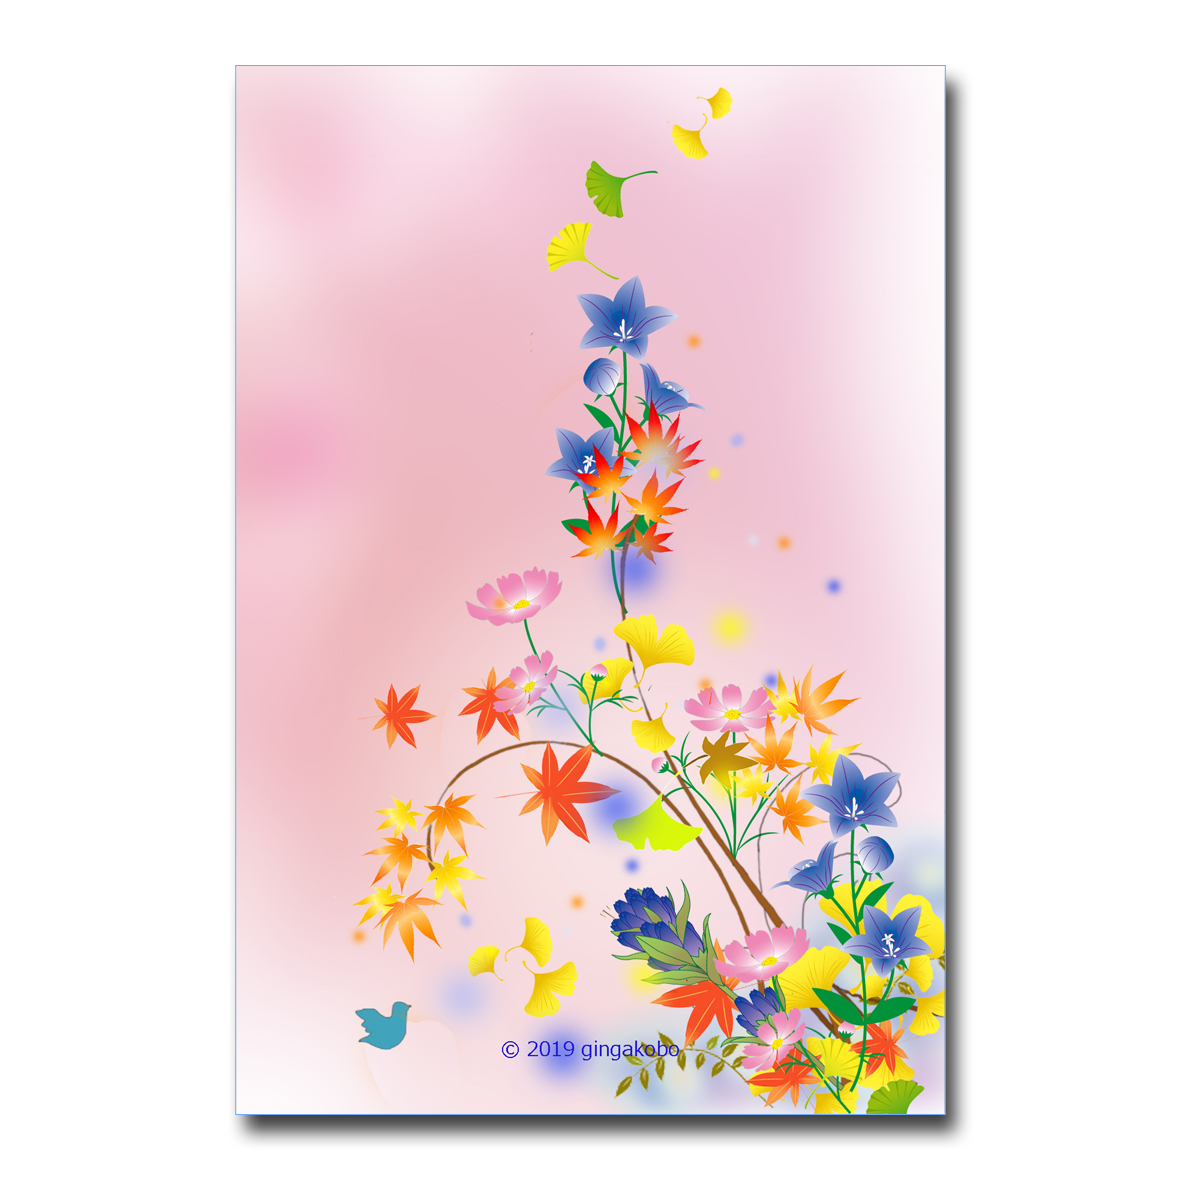 秋の詩 うた ほっこり癒しのイラストポストカード2枚組 No 852 Iichi ハンドメイド クラフト作品 手仕事品の通販